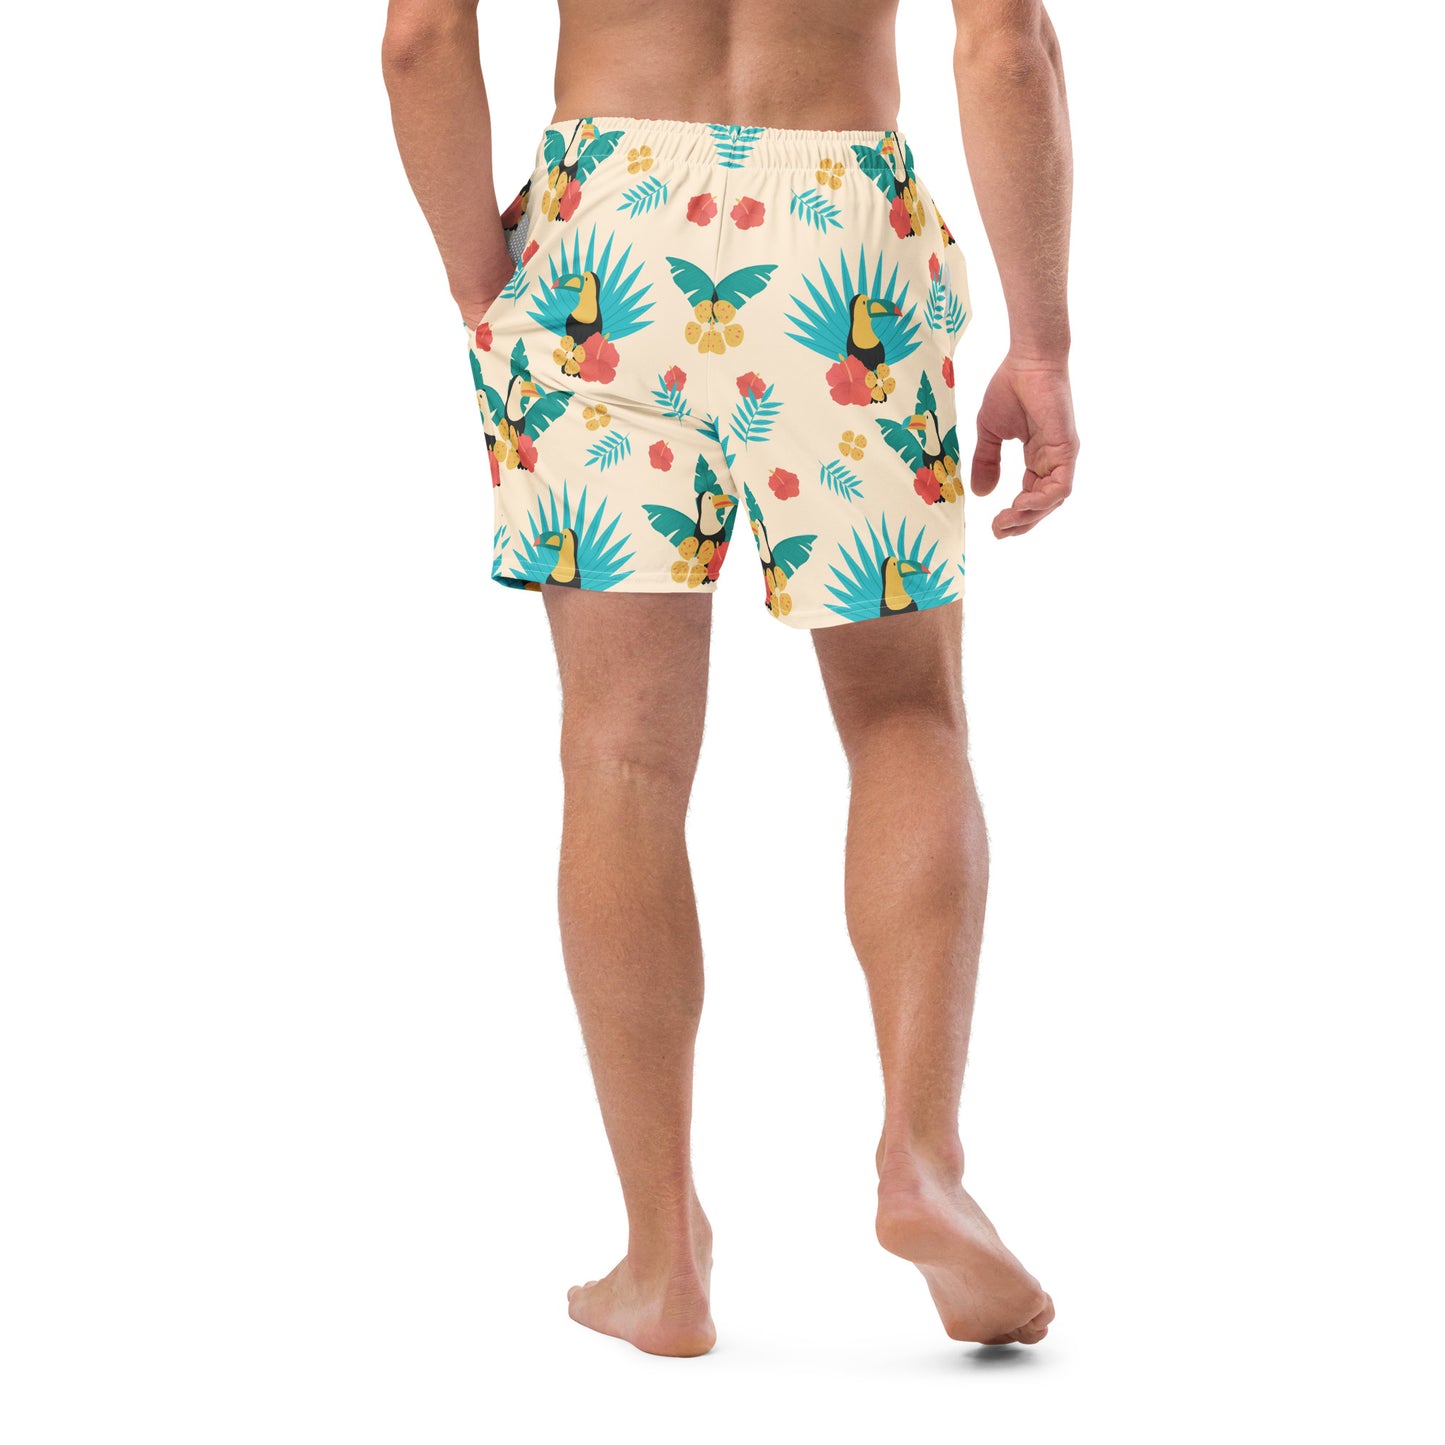 TROPICAL - Men's swim trunks